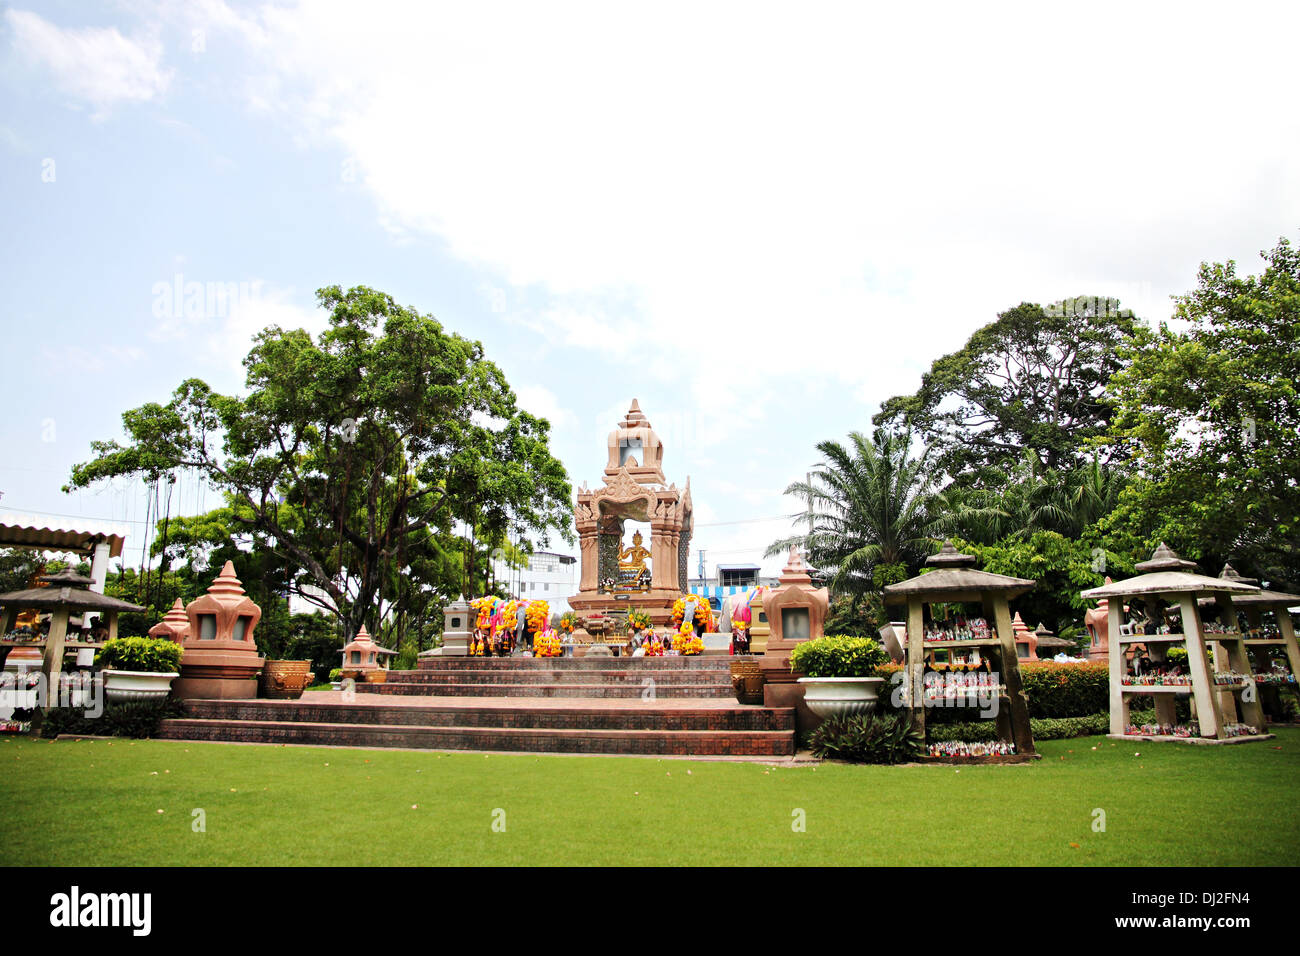 Statua d'oro di Brahma è situato nel parco e persone luogo di culto. Foto Stock